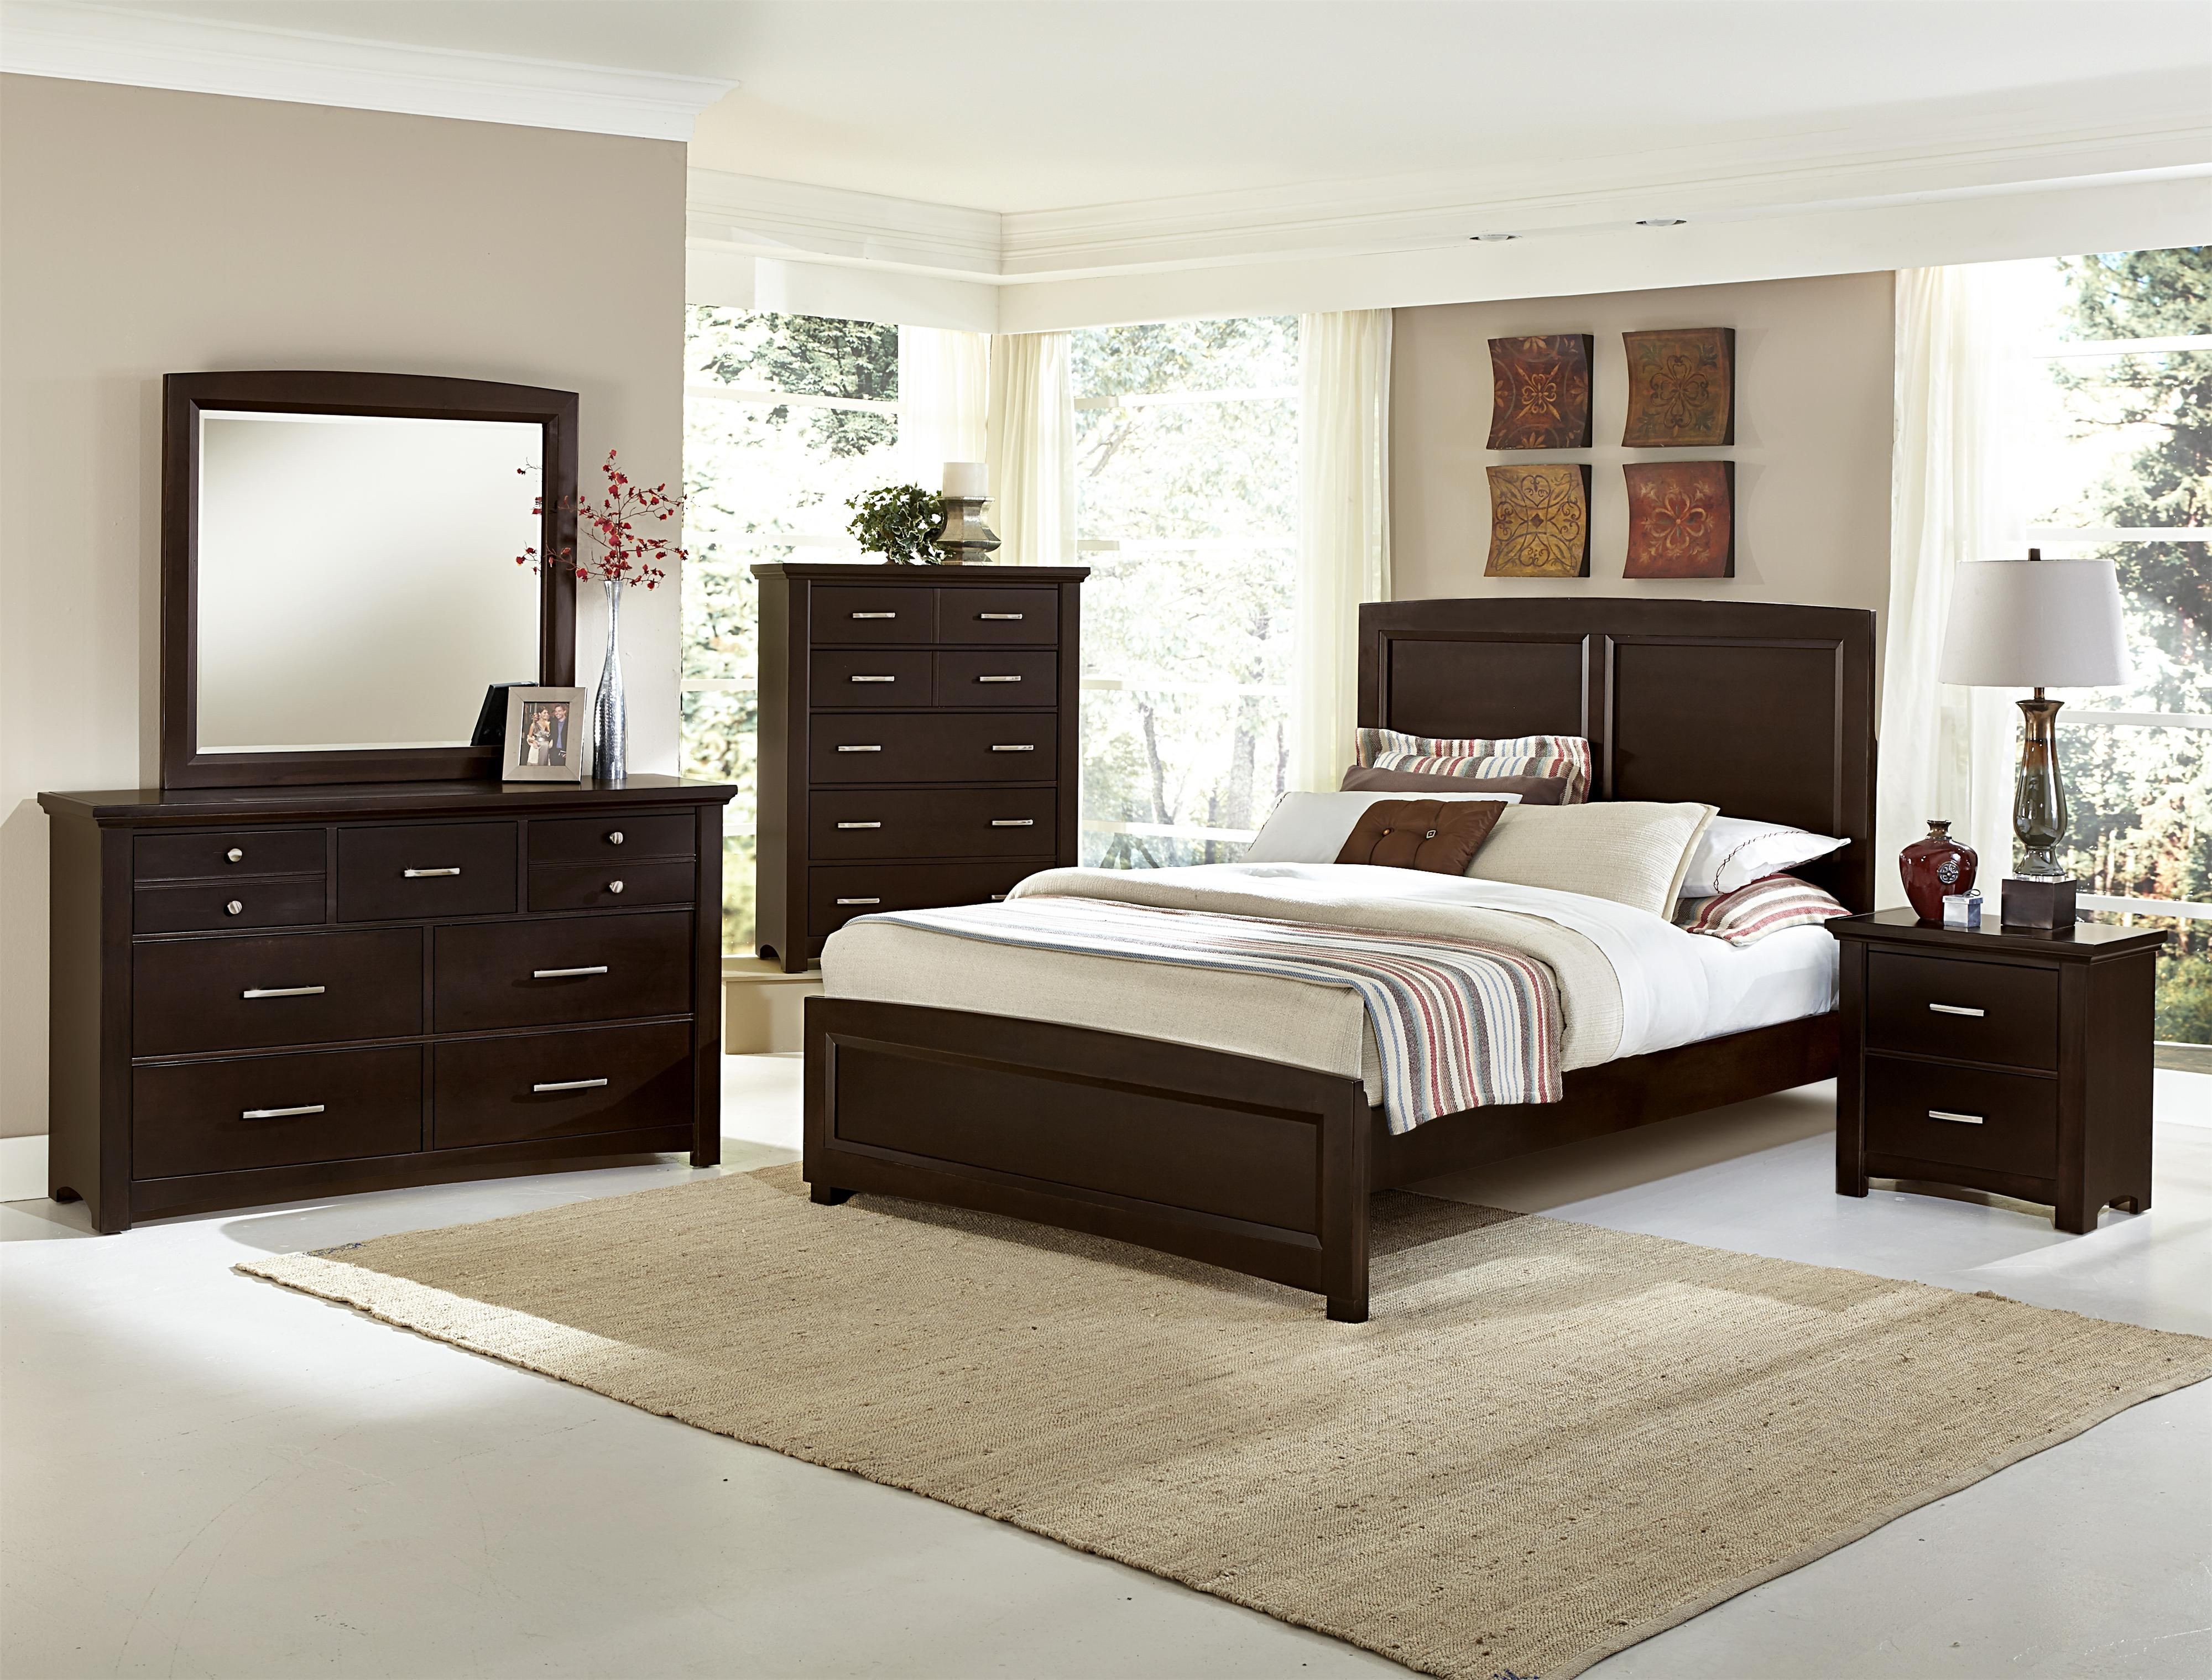 bassett bedroom furniture used